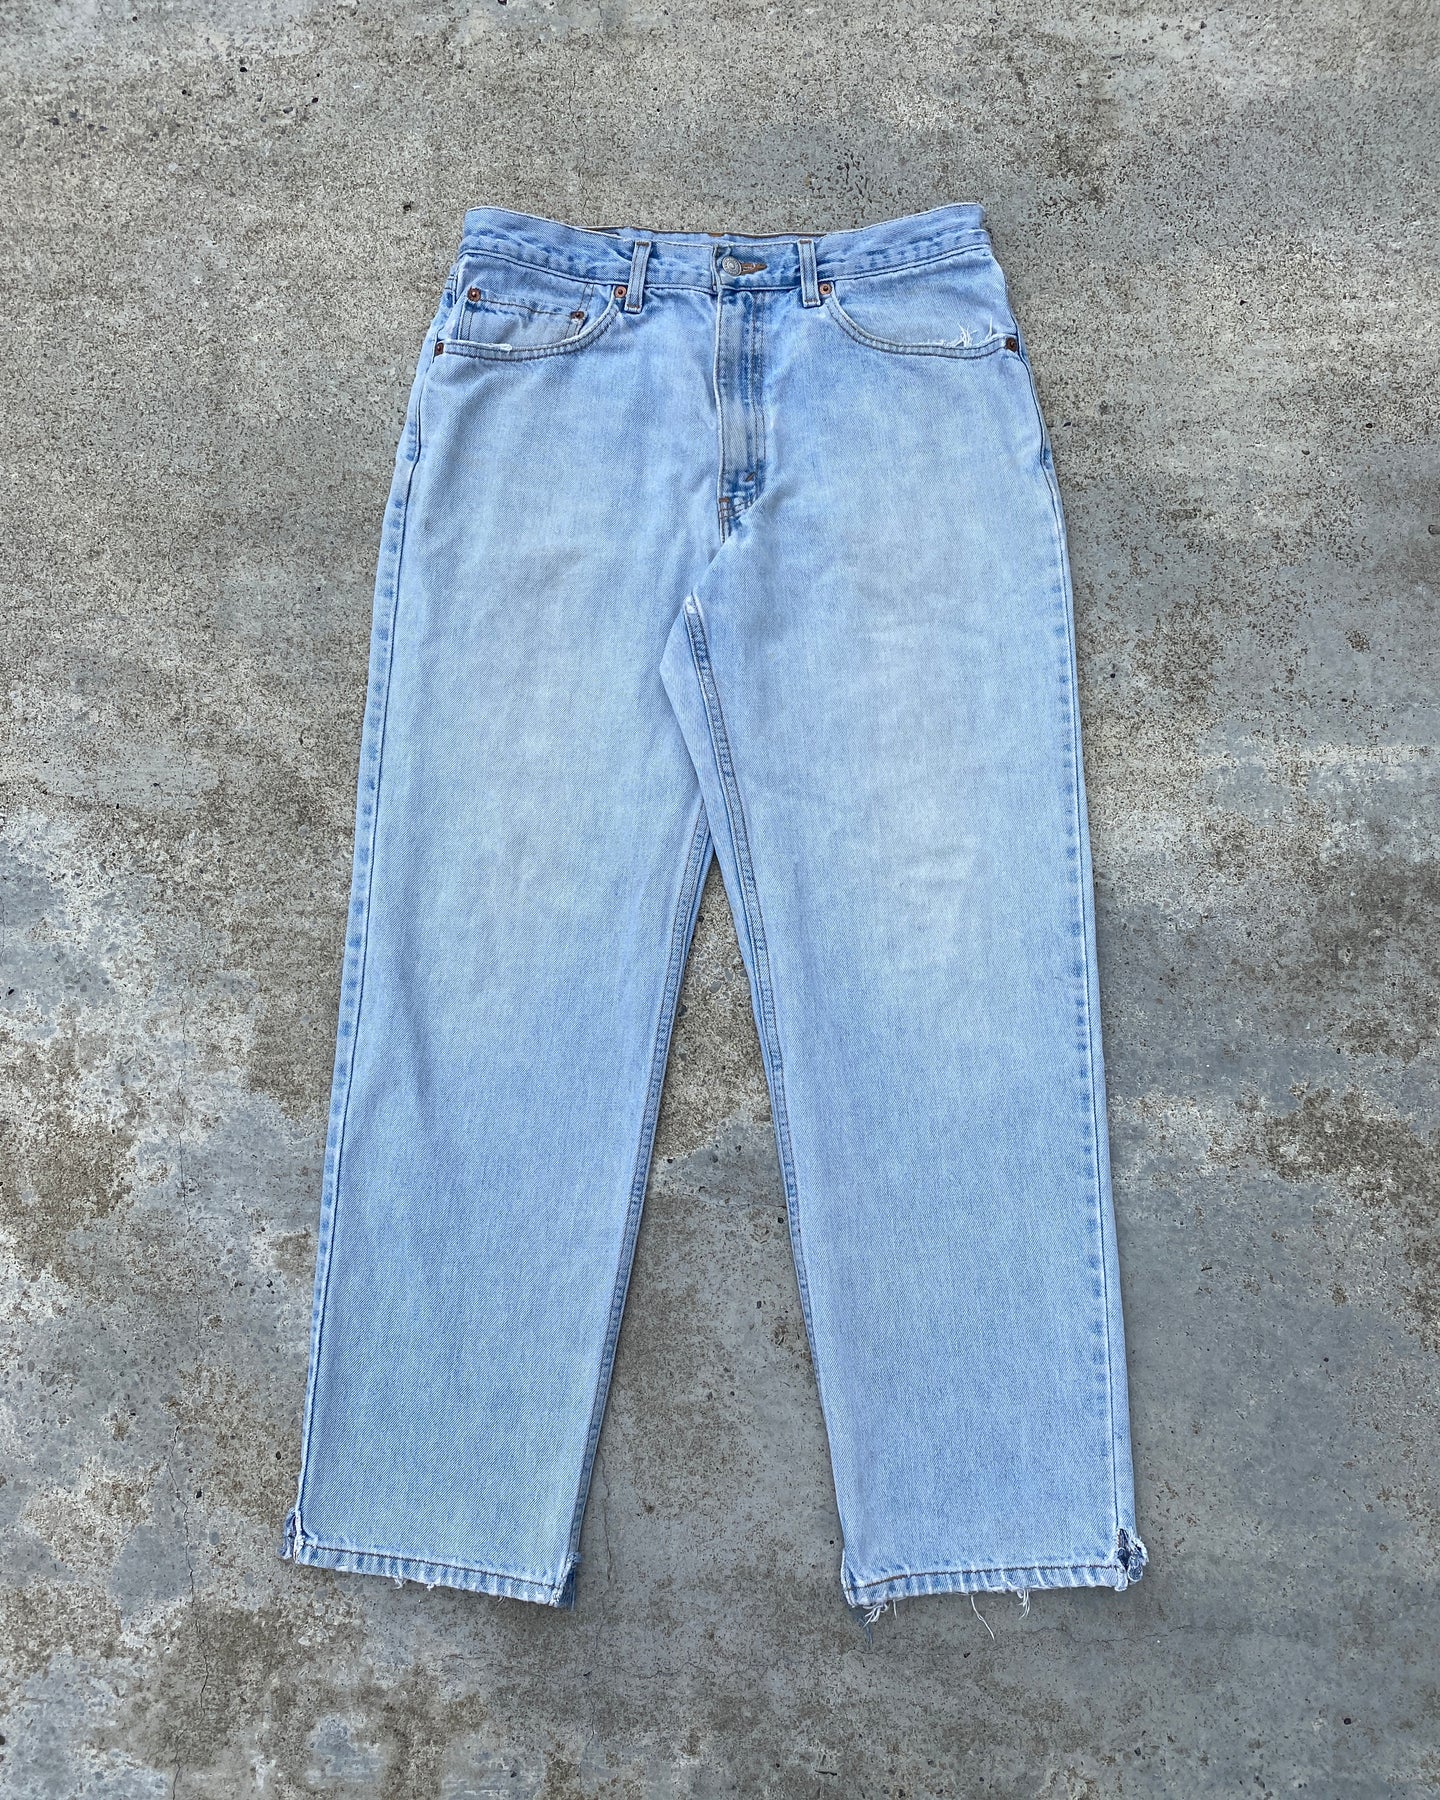 1990s Levi's 550 Light Wash Jeans - Size 33 x 30